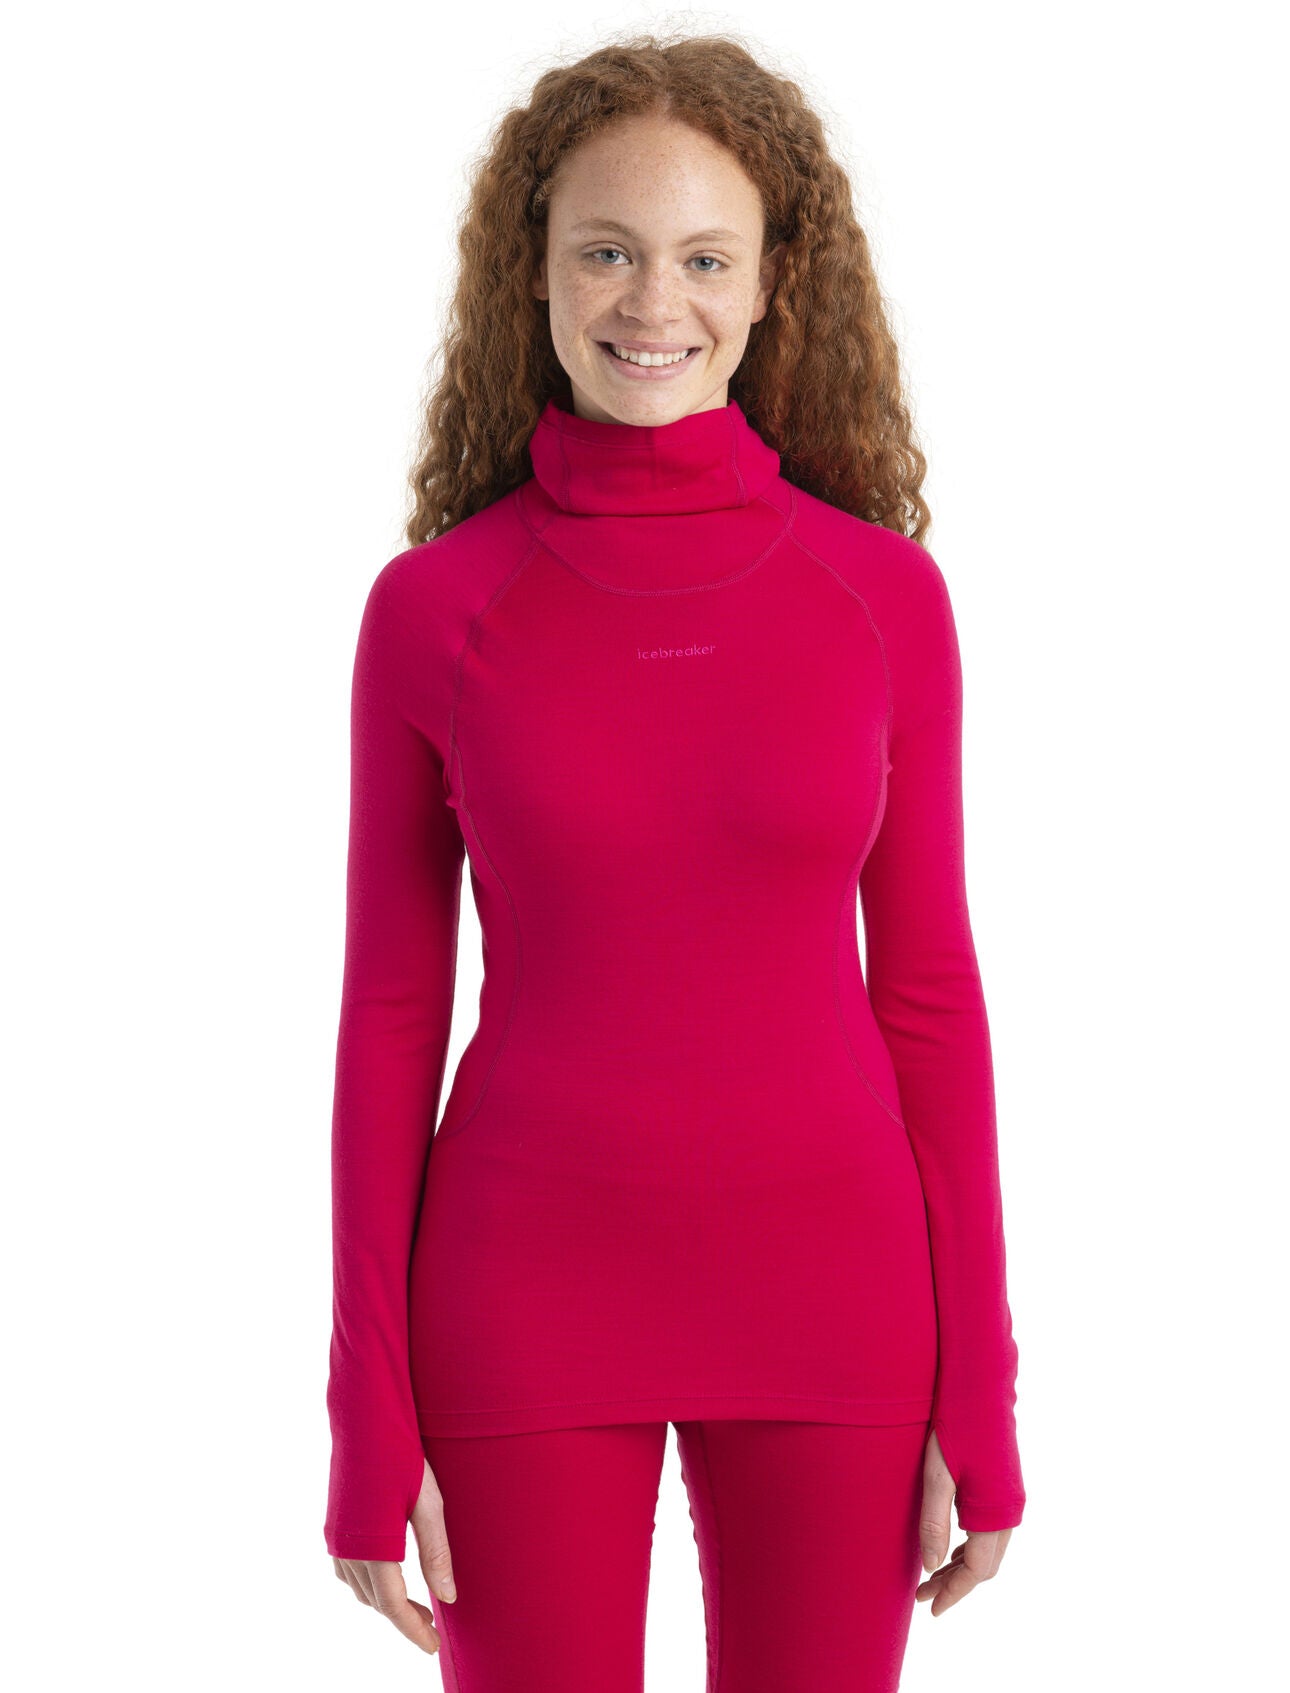 Merino.tech Merino Wool Base Layer Women - 100% Merino Half Zip Sweater  Women Mid, Heavyweight Thermal Shirts + Wool Socks